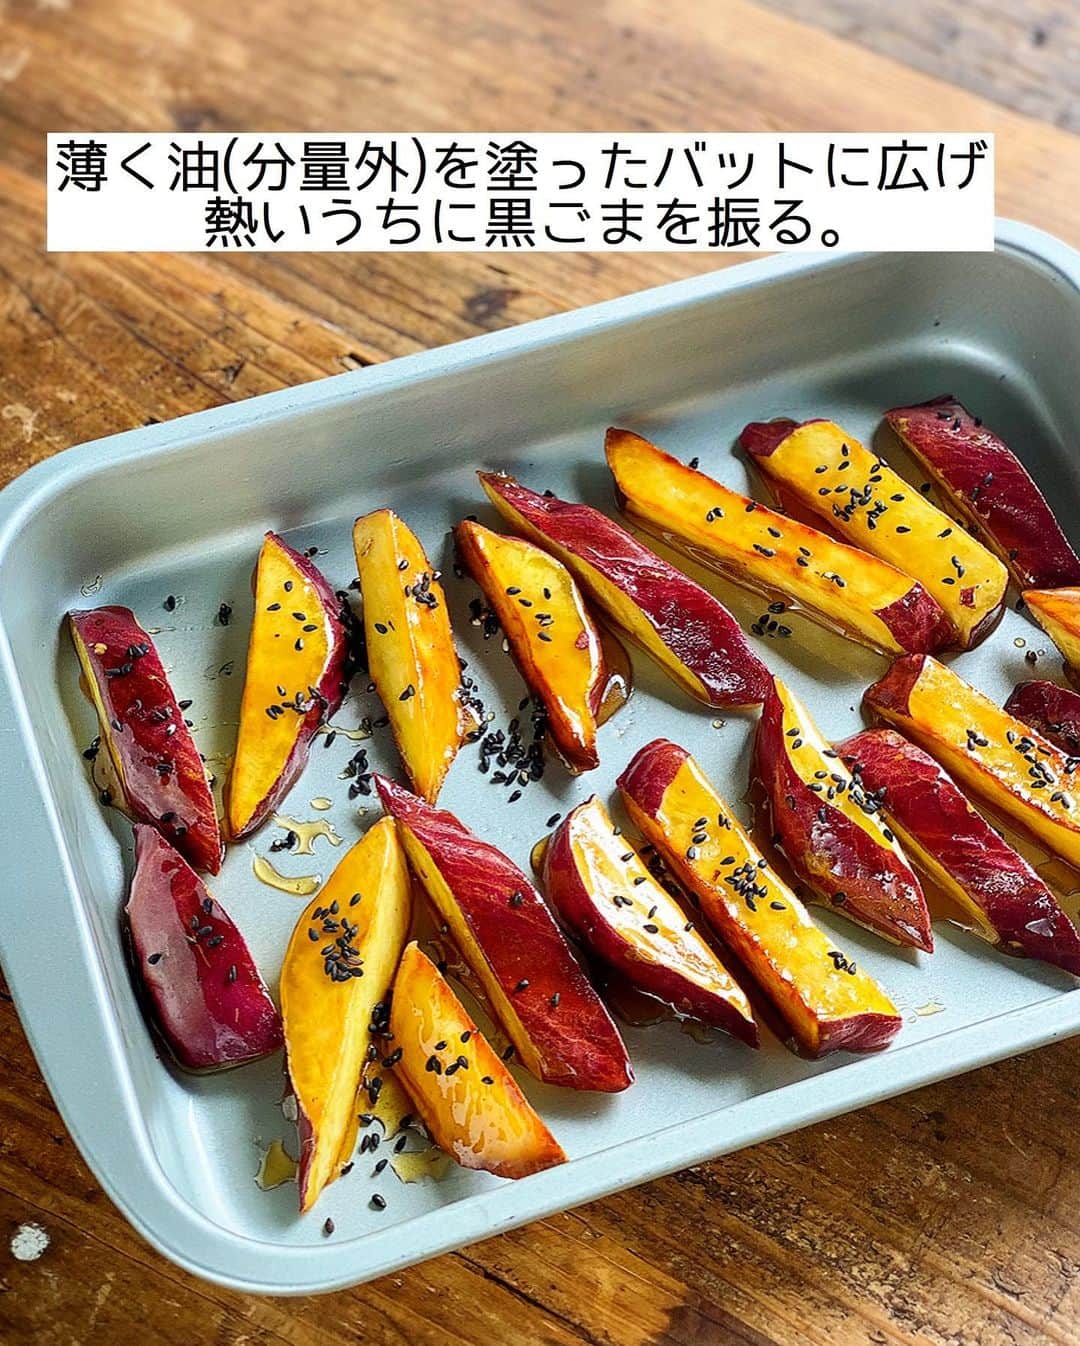 Mizuki【料理ブロガー・簡単レシピ】さんのインスタグラム写真 - (Mizuki【料理ブロガー・簡単レシピ】Instagram)「・ 【#レシピ 】ーーーーーー 油大3！焼き大学芋  (インスタライブレシピ) ーーーーーーーーーーーー ⁡ 　 ⁡ おはようございます(*^^*) ⁡ 昨日はライブ配信をご覧いただき ありがとうございました✨ 今日はその中で作らせていただいた \ 焼き大学芋 / を テキストでご紹介します♩ ⁡ ⁡ 使用する油はたった大さじ3！ 棒状に切ったさつまいもを 焼いてたれをからめるだけの 超簡単レシピです(*´艸`) ⁡ 思い立ったらすぐに作れる手軽さで おやつにぴったりですよ〜♡ これからの季節に よかったらお試し下さいね(*^^*) ⁡ ※［さつまいもの甘辛煮🍠］は 後日アップさせていただきます🙇‍♀️ ⁡ ⁡ ⁡ ＿＿＿＿＿＿＿＿＿＿＿＿＿＿＿＿＿＿＿＿＿ 【作りやすい量】 さつまいも...1本(200g) サラダ油...大3 ●みりん...大2 ●砂糖...大1.5 ●醤油...小2/3 (あれば)黒ごま...適量 ⁡ 1.さつまいもは斜め1.5cm幅に切ってから、縦1cm幅の棒状に切り、水に5分晒して水気を切る。 2.フライパンにサラダ油を中火で熱し、1を返しながら焼く(7分くらい)。さつまいもに火が通ったら引き上げて油を切る。 3.フライパンを綺麗にし、●を入れて煮立て、あめ状になったら2を加えてからめる。 4.薄く油(分量外)を塗ったバットに広げ、熱いうちに黒ごまを振る。 ￣￣￣￣￣￣￣￣￣￣￣￣￣￣￣￣￣￣￣￣￣ ⁡ ⁡ ⁡ 《ポイント》 ♦︎さつまいもの大きさ(切り方)により焼き時間は加減して下さい♩ ♦︎工程3のたれの状態は昨日のインスタライブ動画をご覧いただくとわかりやすいかと思います♩ →動画はIGTVに保存しております☆ (''13分くらい''から大学芋の調理動画です🍠) ⁡ ⁡ ⁡ ⁡ ⁡ ⁡ ⁡ \ 新刊予約開始しました /(9月24日発売) ⁡ 🔹🔹🔹🔹🔹🔹🔹🔹🔹🔹🔹🔹 今日のごはんこれに決まり！ #Mizukiのレシピノート 決定版 500品 🔹🔹🔹🔹🔹🔹🔹🔹🔹🔹🔹🔹 ⁡ 総レシピ6000点の中からレシピを厳選！ まさかの【500レシピ掲載】しました⭐️ (もはや辞典...) ⁡ 肉や魚のメインおかずはもちろん 副菜、丼、麺、スープ、お菓子 ハレの日のレシピ、鍋のレシピまで 全てこの一冊で完結！！ ⁡ ⁡ 🎁新刊予約でエプロンが当たる🎁 プレゼントキャンペーン実施中 ￣￣￣￣￣￣￣￣￣￣￣￣￣￣￣￣￣￣￣￣￣ 【応募方法】 ❶1枚目に表紙画像 2枚目にAmazonで予約したことがわかる画像 (どちらもスクショでOK)を貼りつける。 ❷ハッシュタグ【#Mizukiのレシピノート 】 をつけて投稿！ ￣￣￣￣￣￣￣￣￣￣￣￣￣￣￣￣￣￣￣￣￣￣ ⁡ ⁡ ⁡ ⁡ ⁡ ＿＿＿＿＿＿＿＿＿＿＿＿＿＿＿＿ 🟥YouTube 料理動画配信中🟥 ￣￣￣￣￣￣￣￣￣￣￣￣￣￣￣￣ 料理とお菓子の簡単レシピを ご紹介しています☺️💓 ⁡ 【奇跡のキッチン】で検索🔍 (ハイライトからも飛べます✨) ￣￣￣￣￣￣￣￣￣￣￣￣￣￣￣￣ ⁡ ⁡ ⁡ ＿＿＿＿＿＿＿＿＿＿＿＿＿＿＿＿ 🔶🔶recipe book🔶🔶 ￣￣￣￣￣￣￣￣￣￣￣￣￣￣￣￣ ホケミレシピの決定版♩ \はじめてでも失敗しない/ 📙#ホットケーキミックスのお菓子 ⁡ NHKまる得マガジンテキスト☆ #ホットケーキミックス で ⁡ 📗絶品おやつ&意外なランチ ⁡ しんどくない献立、考えました♩ \𝟣𝟧分でいただきます/ 📕#Mizukiの2品献立 ⁡ 和食をもっとカジュアルに♩ \毎日のごはんがラクになる/ 📘#Mizukiの今どき和食  ＿＿＿＿＿＿＿＿＿＿＿＿＿＿＿＿＿ ⁡ ⁡ ⁡ ⁡ #焼き大学芋m #大学芋 #さつまいも #おやつ #揚げない #mizuki #簡単レシピ #時短レシピ #節約レシピ #料理 #料理初心者  #時短ごはん #節約ごはん #フーディーテーブル #おうちごはん #デリスタグラマー #おうちごはんlover #料理好きな人と繋がりたい #写真好きな人と繋がりたい #foodpick#cooking#recipe #foodporn」8月23日 7時52分 - mizuki_31cafe